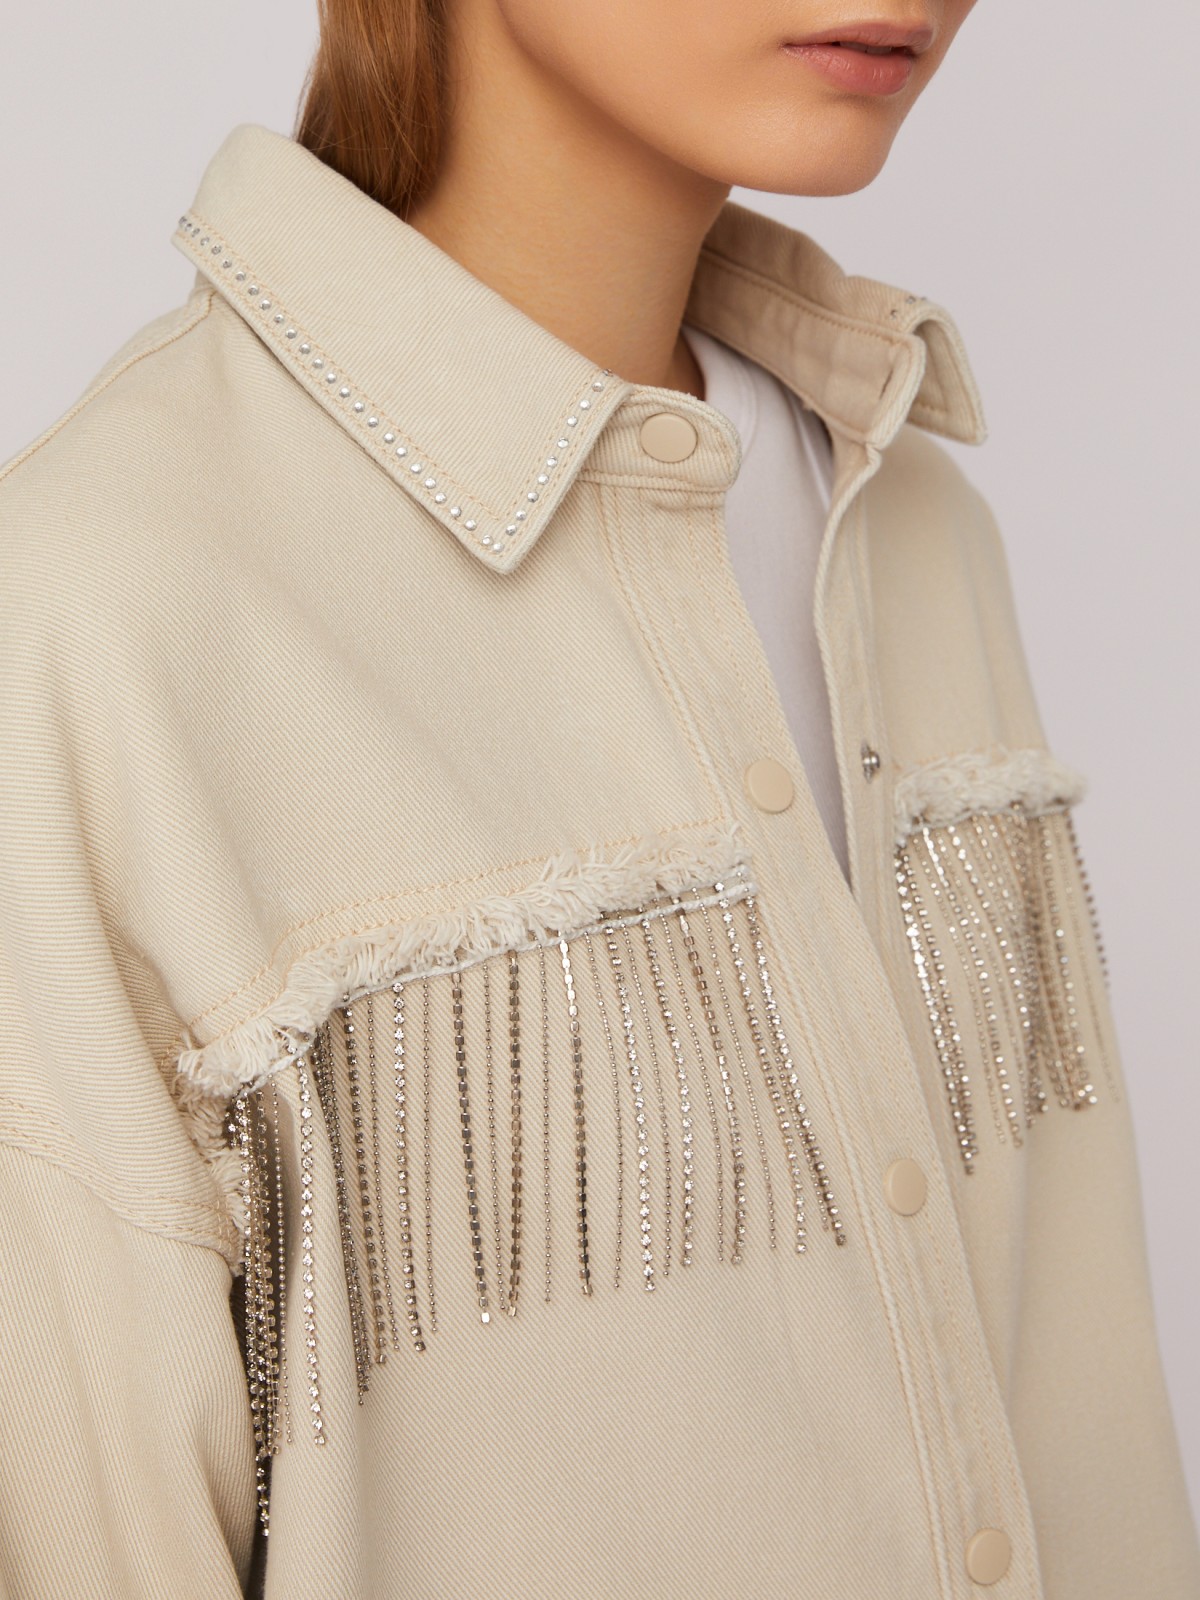 Джинсовая куртка-рубашка с бахромой со стразами zolla 024215D0V011, цвет бежевый, размер XS - фото 4